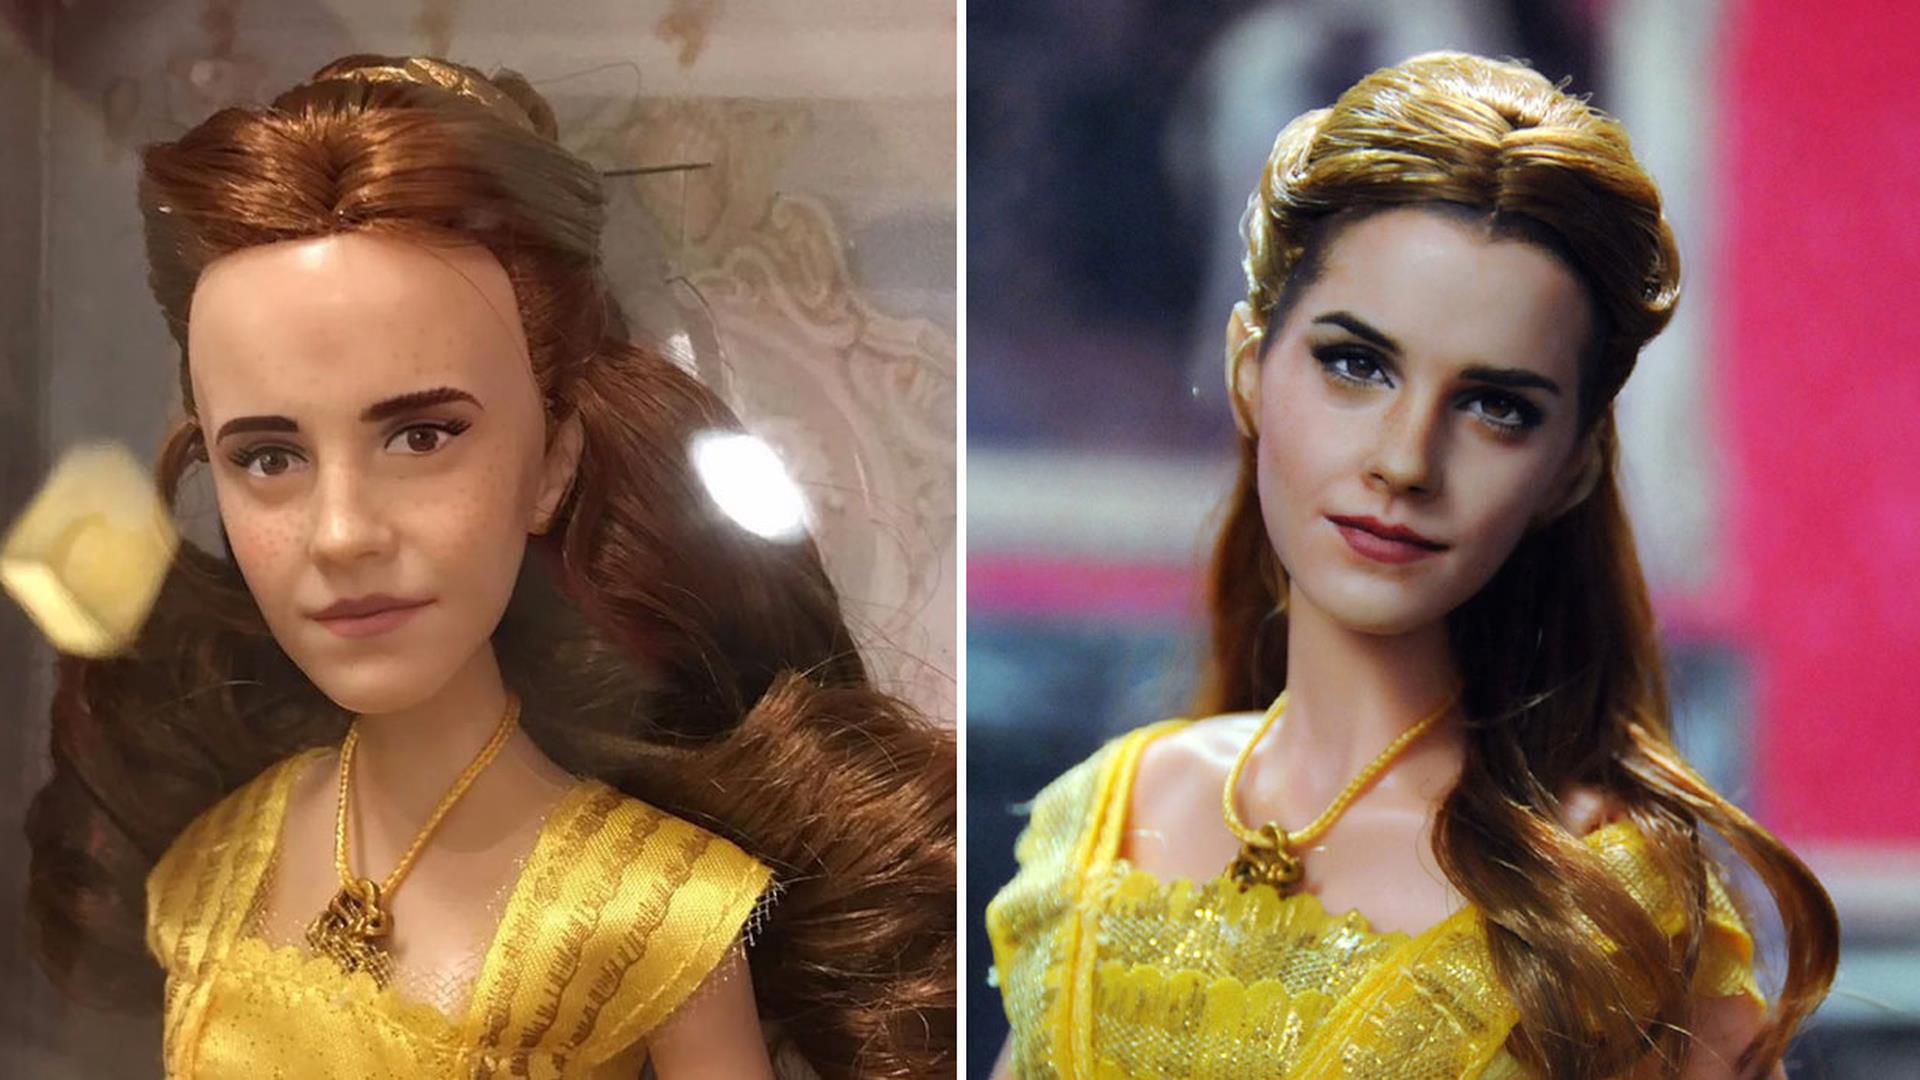 La Bella e la Bestia: uno splendido makeover per la bambola di Belle